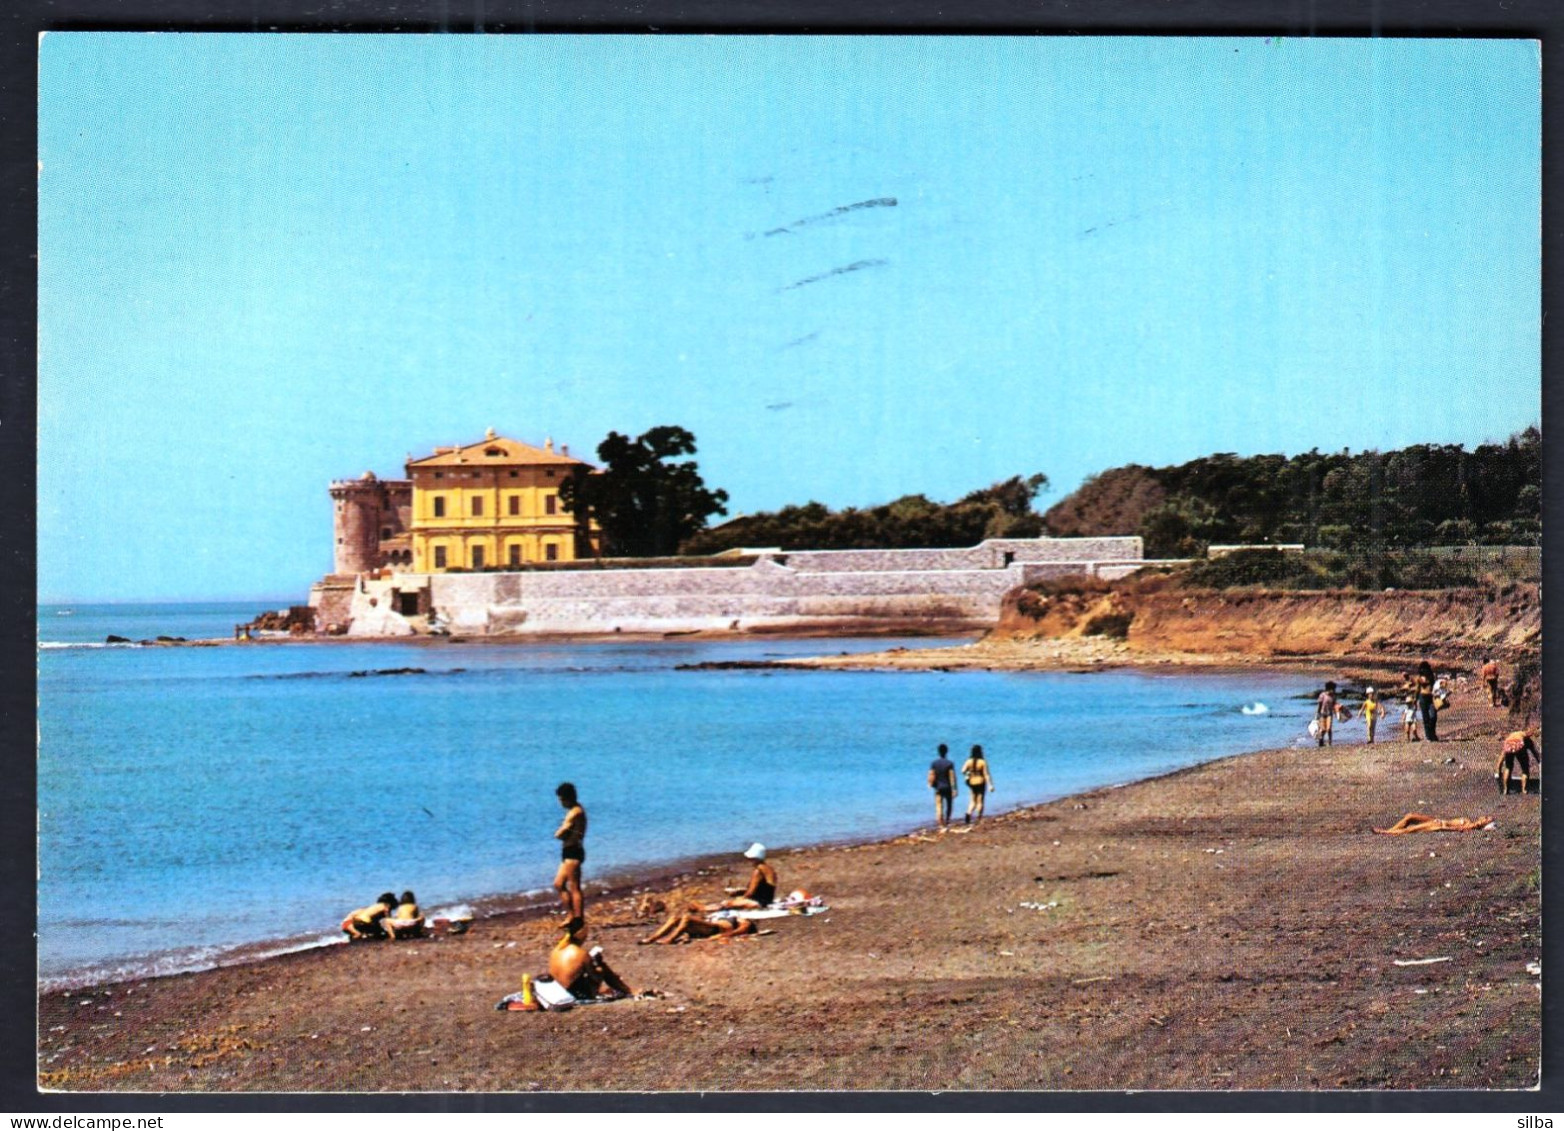 Italy Roma Rome 1974 / Marina Di S. Nicola / Panorama, Beach - Mehransichten, Panoramakarten